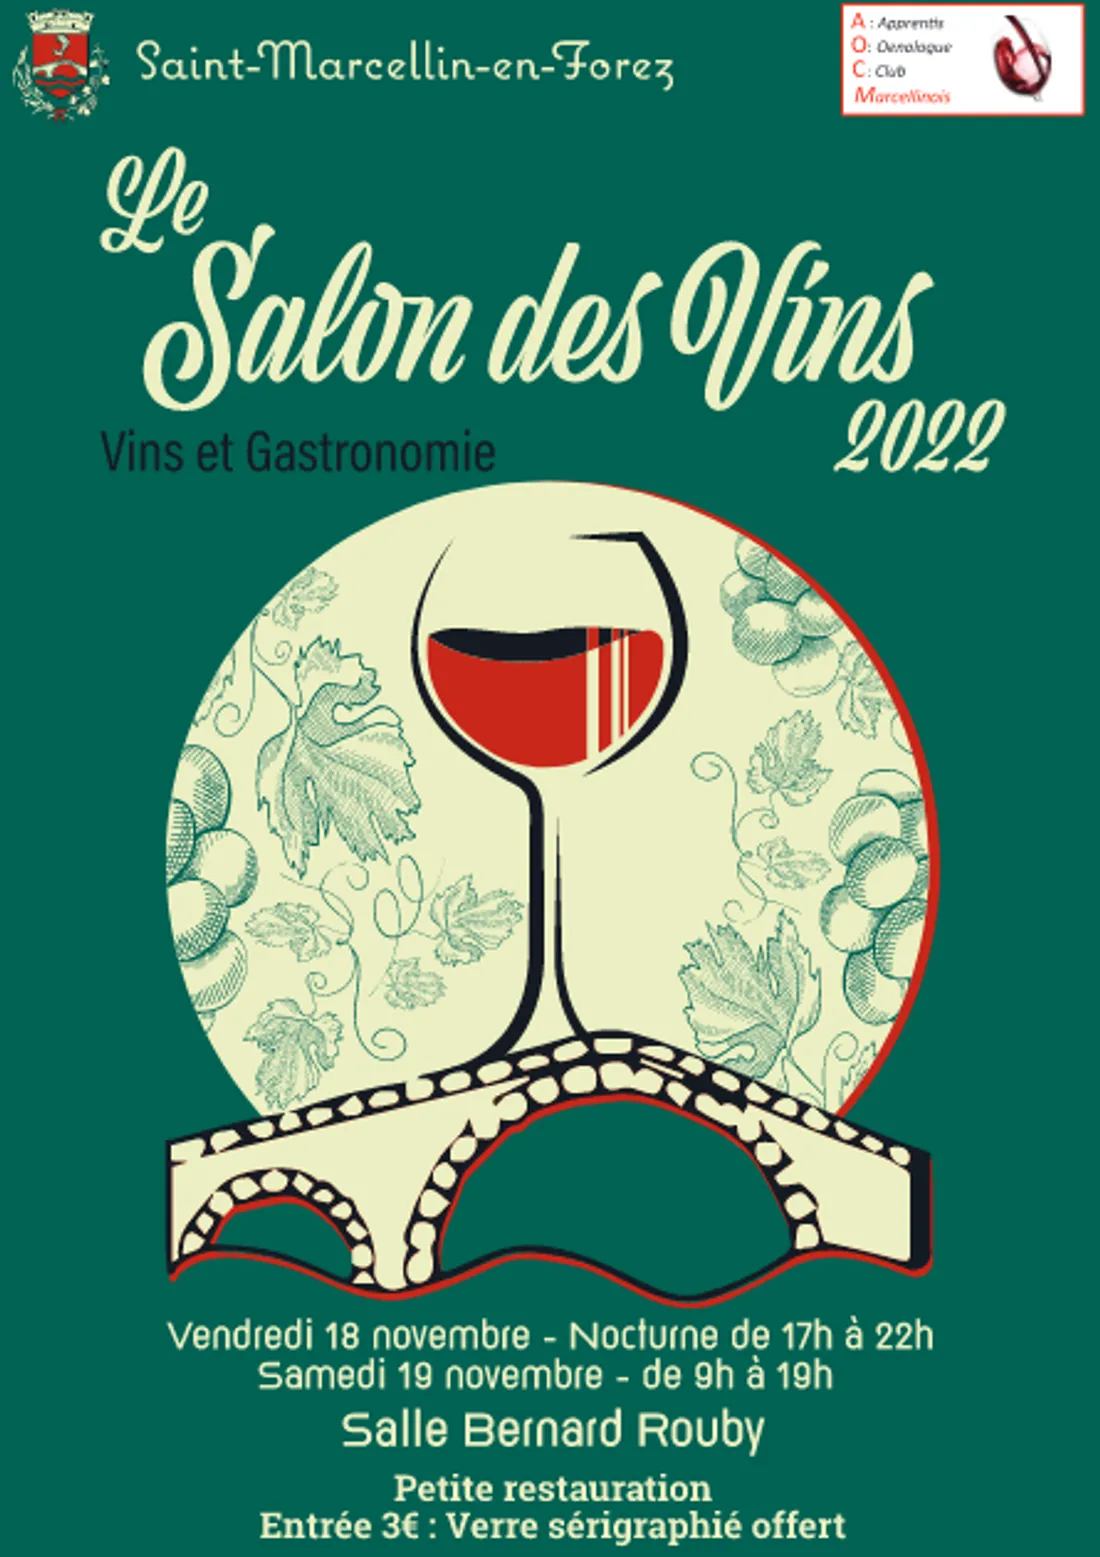 Salon des Vins à St-Marcellin-en-Forez